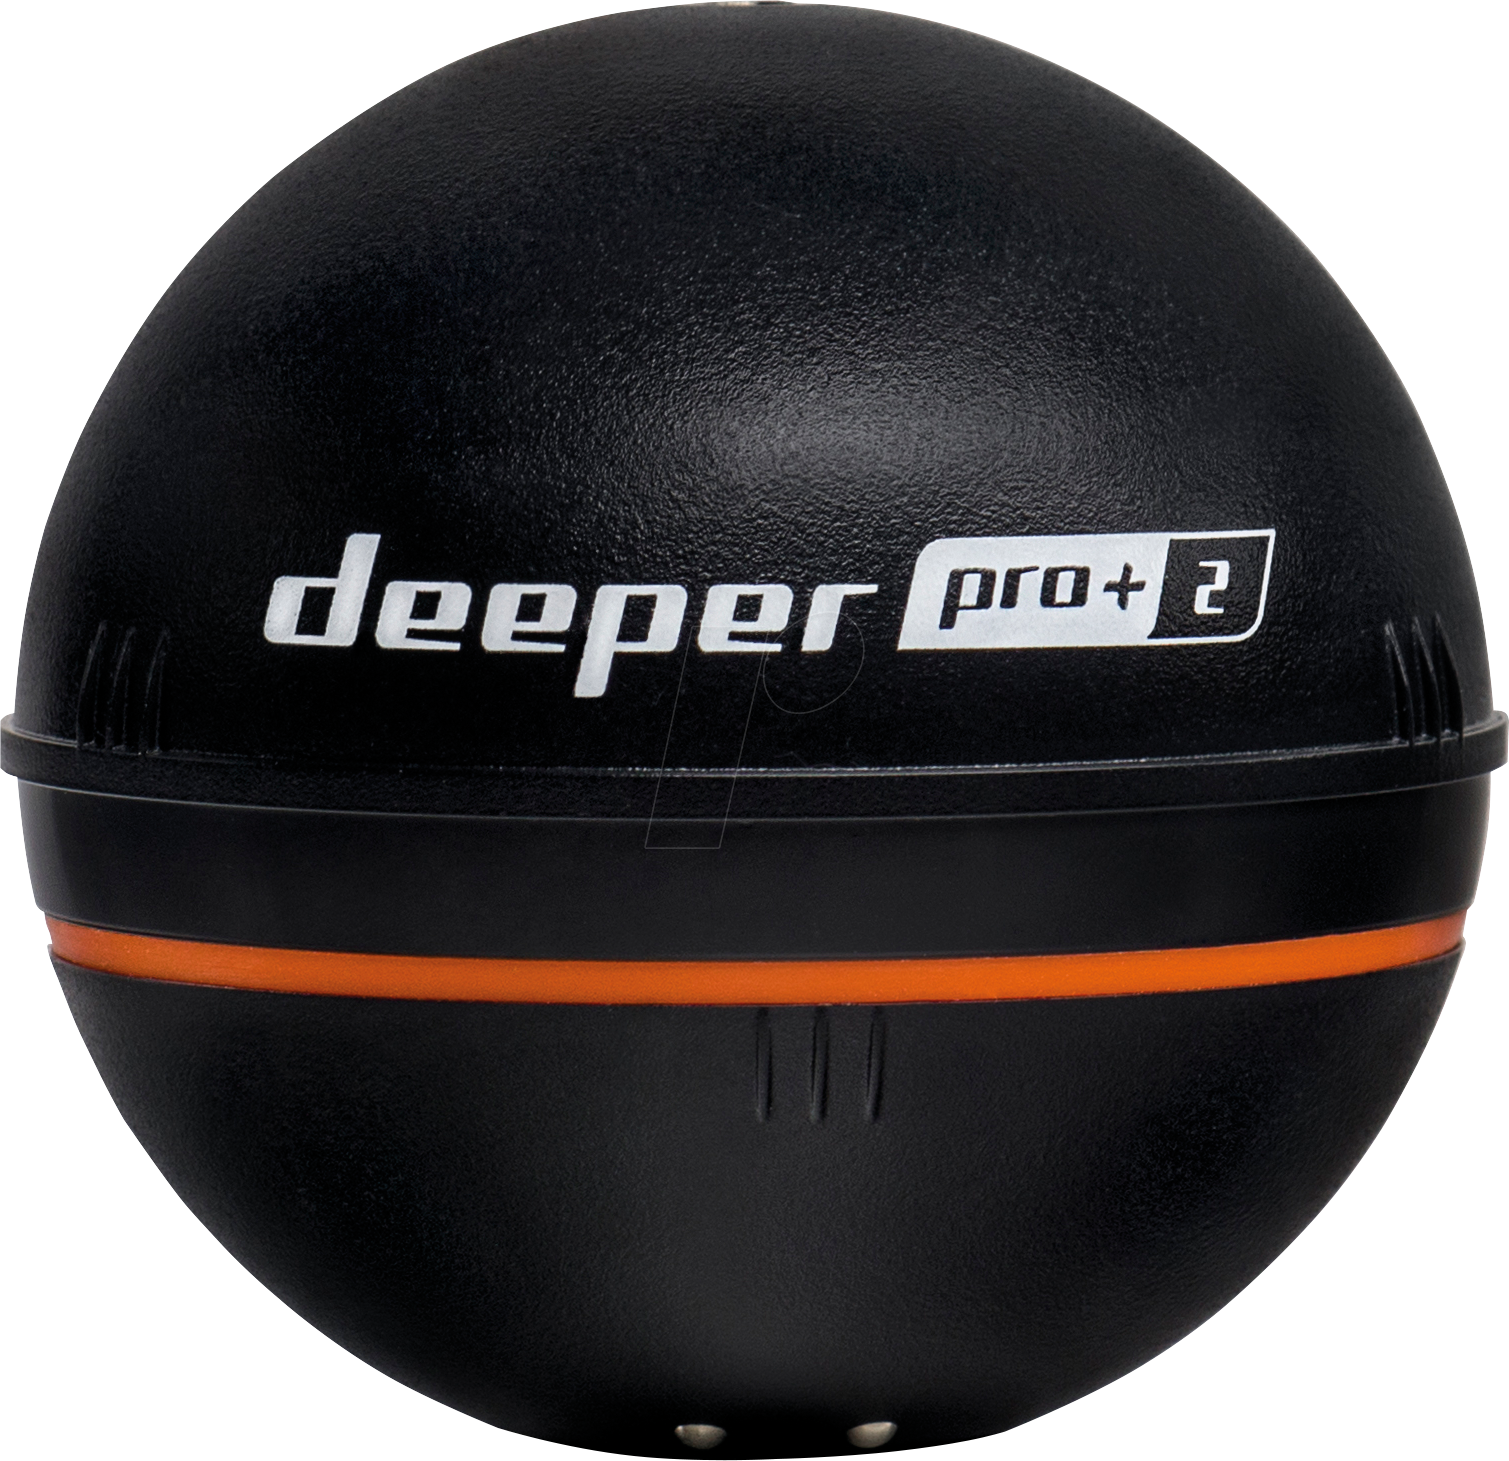 DEEPER PRO+ 2 - Deeper Smart Sonar PRO+ 2 von DEEPER